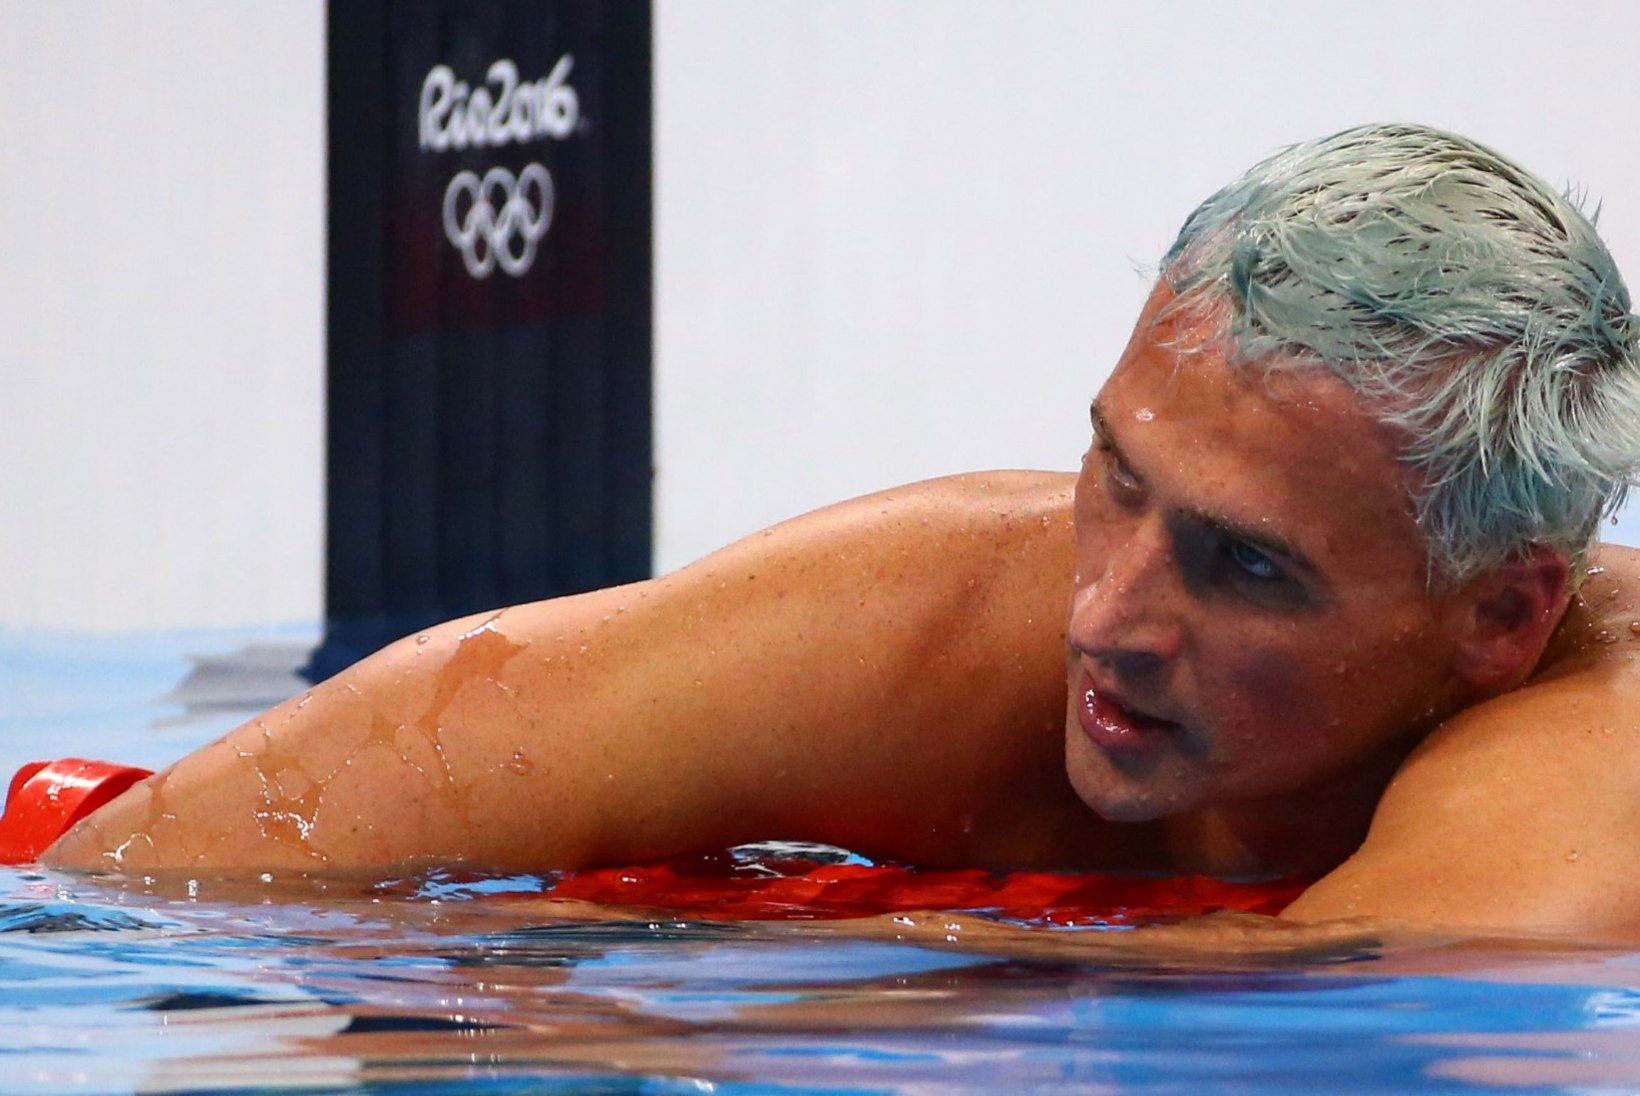 Ujumislegendi tabasid pärast Rio olümpiat suitsiidimõtted: olin ilmselt maailma vihatuim inimene